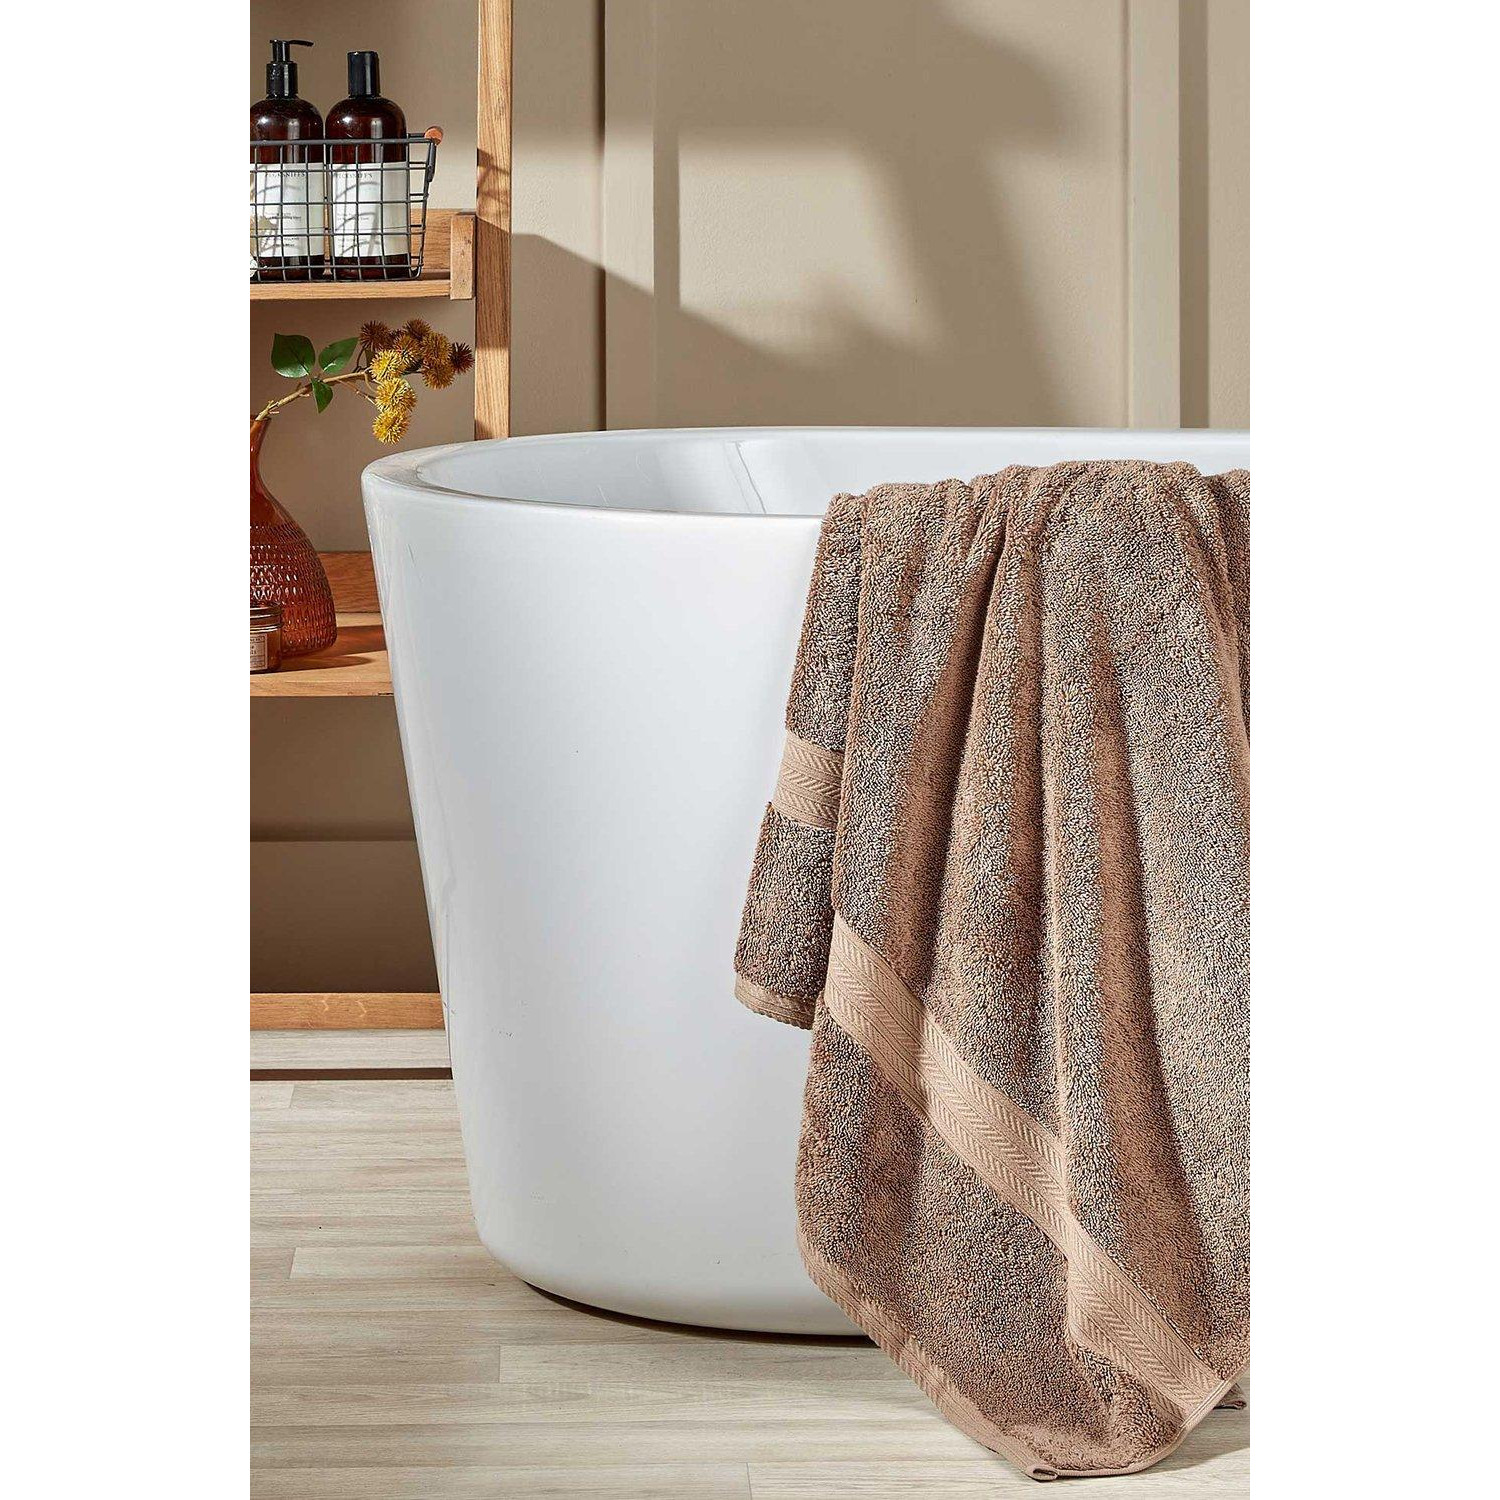 'Renaissance' Luxury 675GSM Egyptian Cotton Towels - image 1